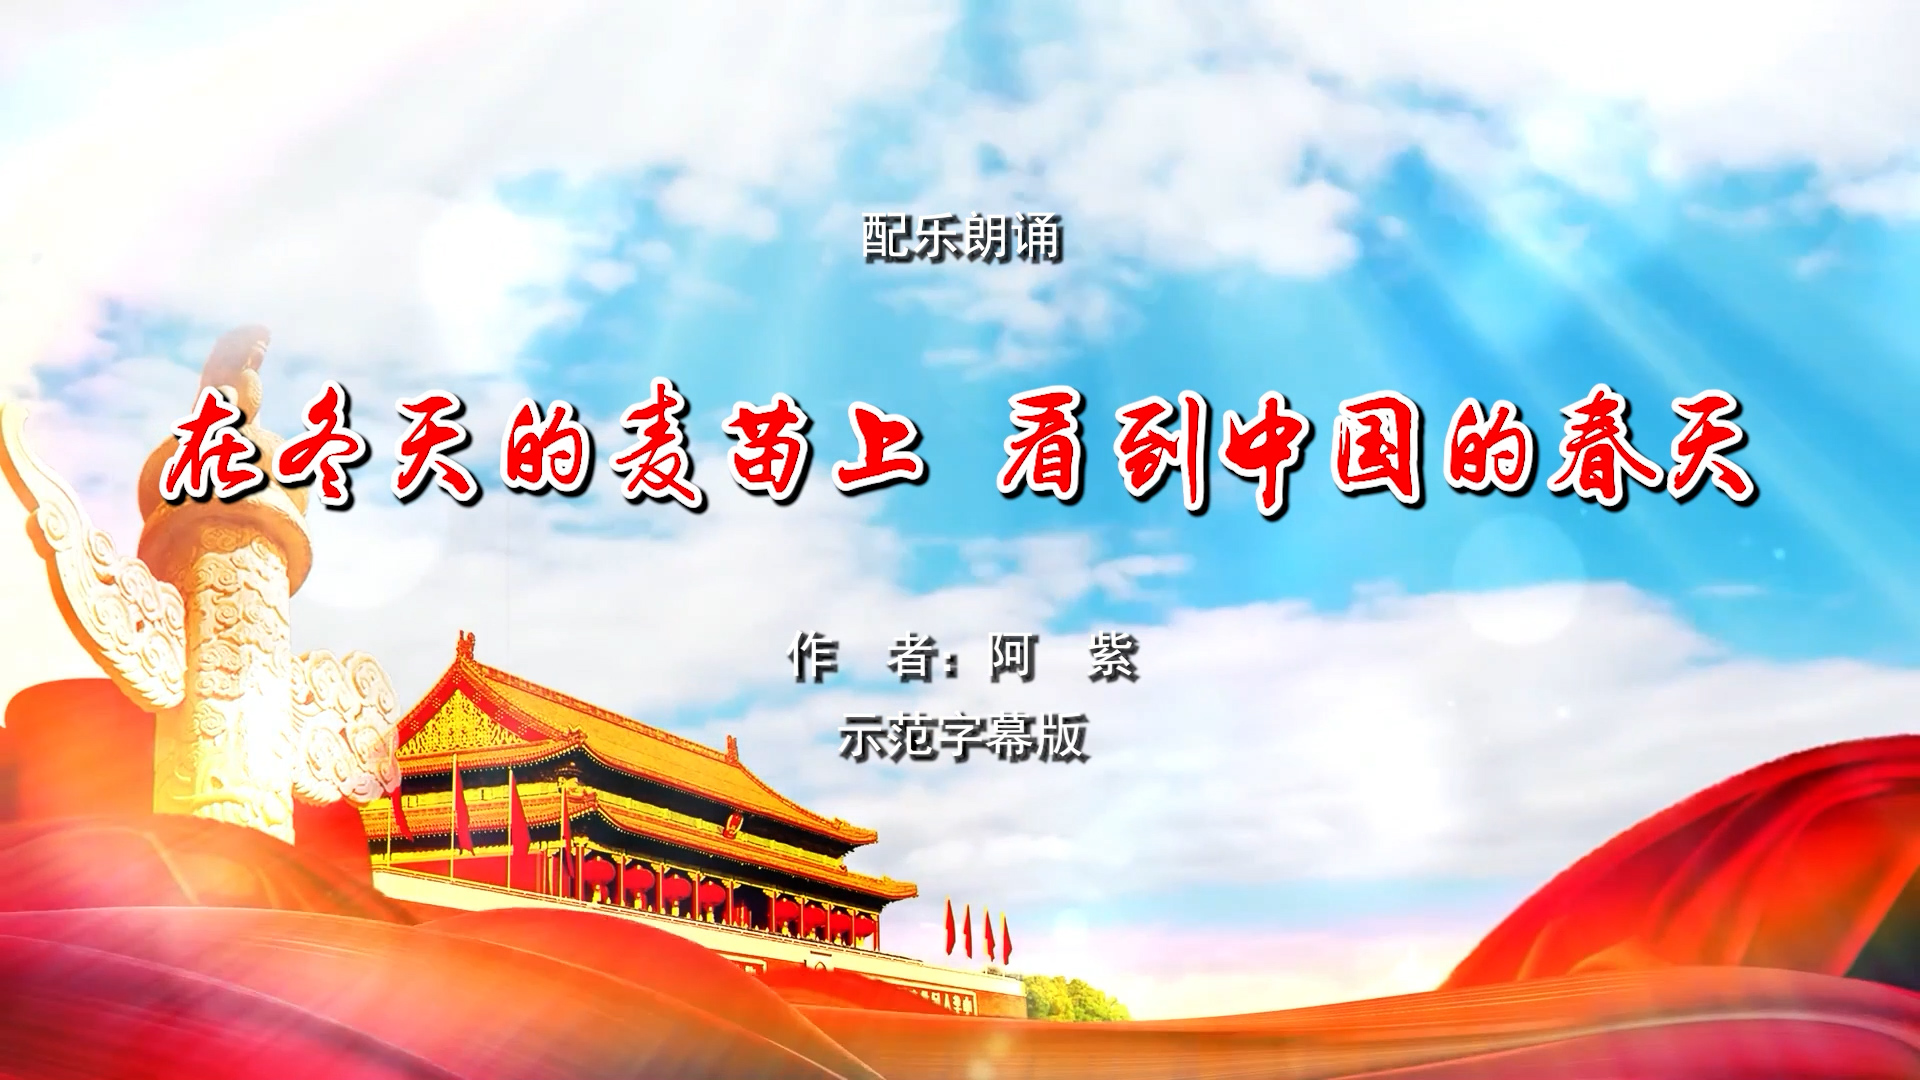 在冬天的麦苗上看到中国的春天 歌颂祖国 诗歌朗诵配乐伴奏舞台演出LED背景视频素材TV